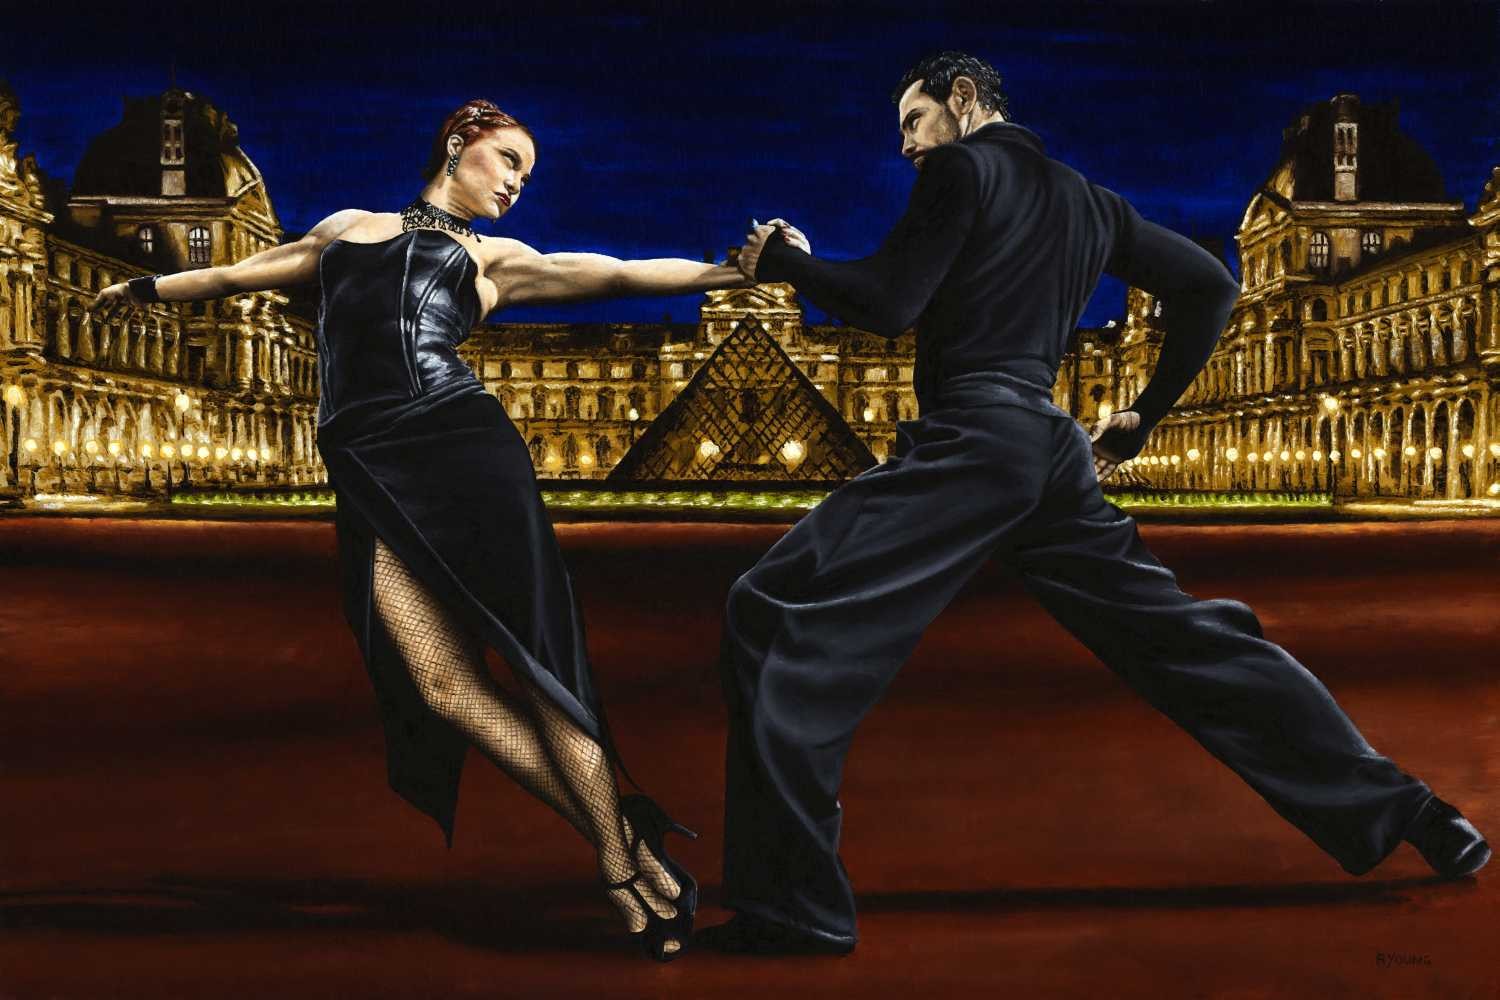 Richard Young, last tango in paris (Tanzpaar, Tango, erotisch, emotional, Louvre, Paris, Nachtszene, Tanz, Frau, Mann, Malerei, zeitgenössischer Realismus, Wohnzimmer, Wunschgröße, bunt)